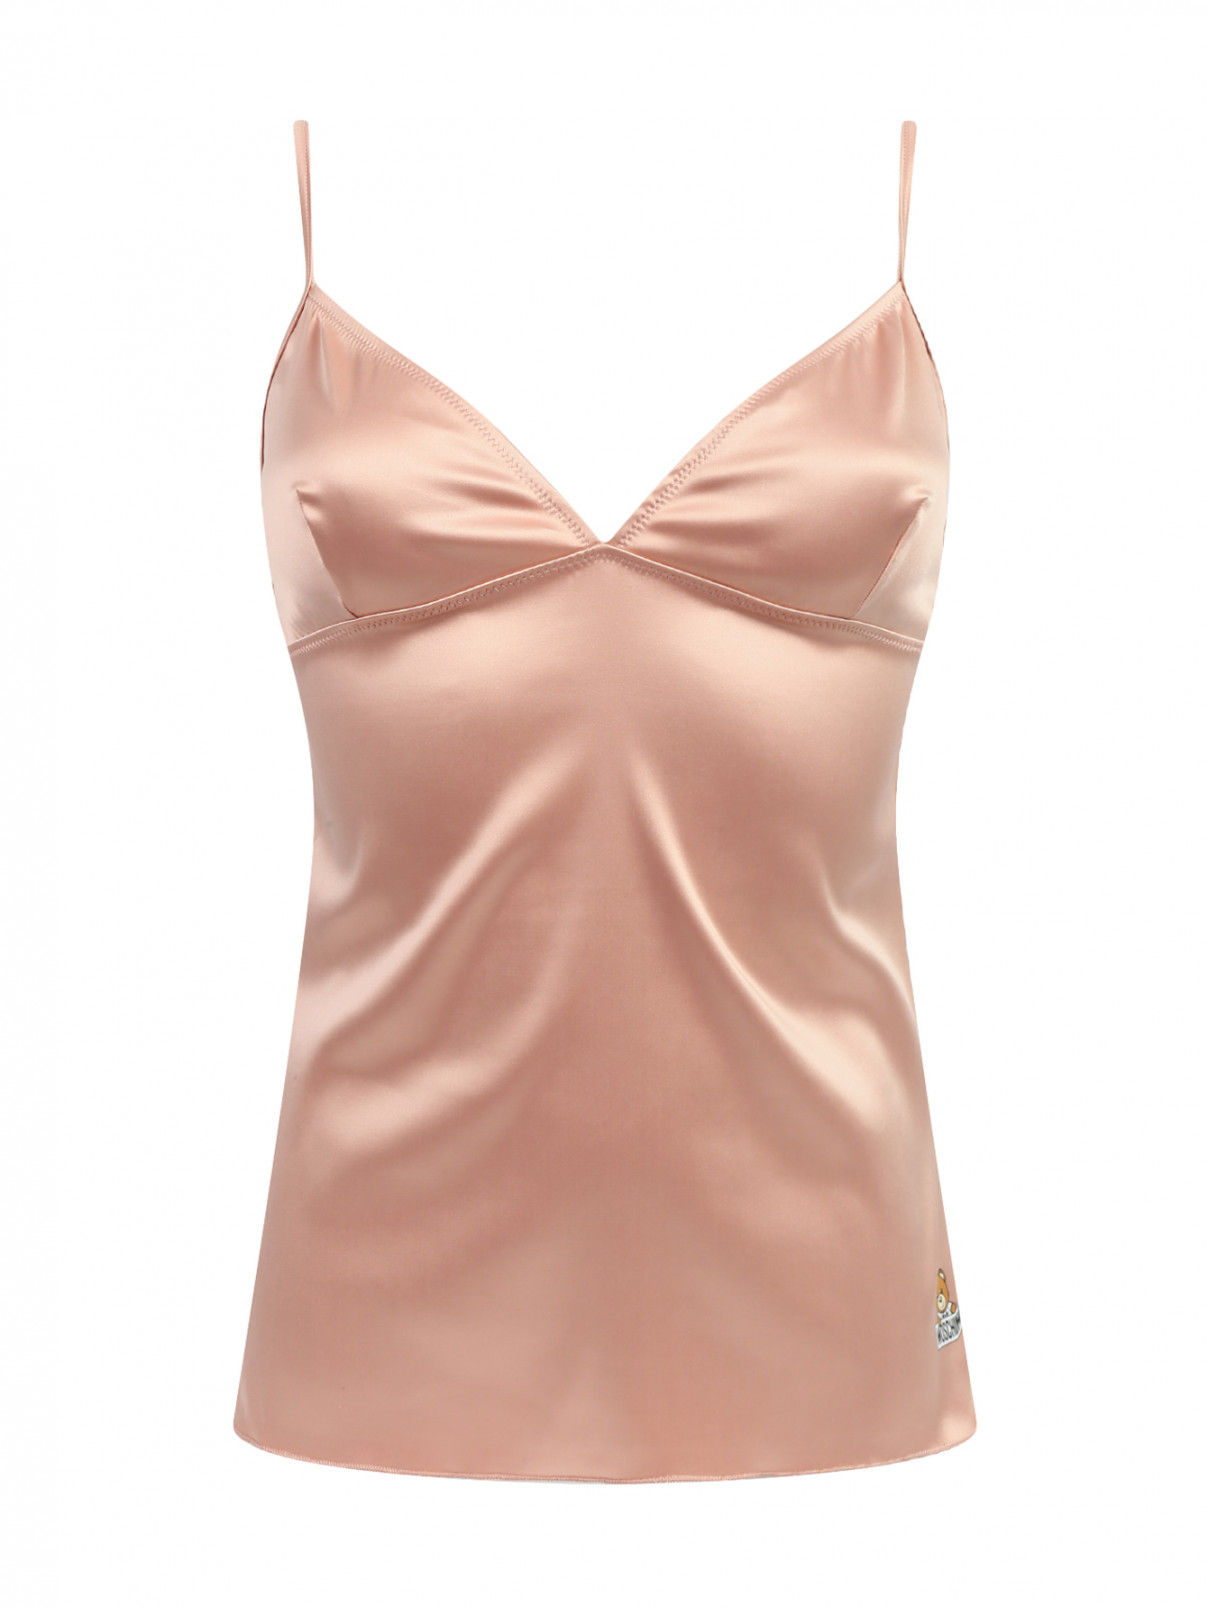 Комбинация на бретелях Moschino Underwear  –  Общий вид  – Цвет:  Розовый